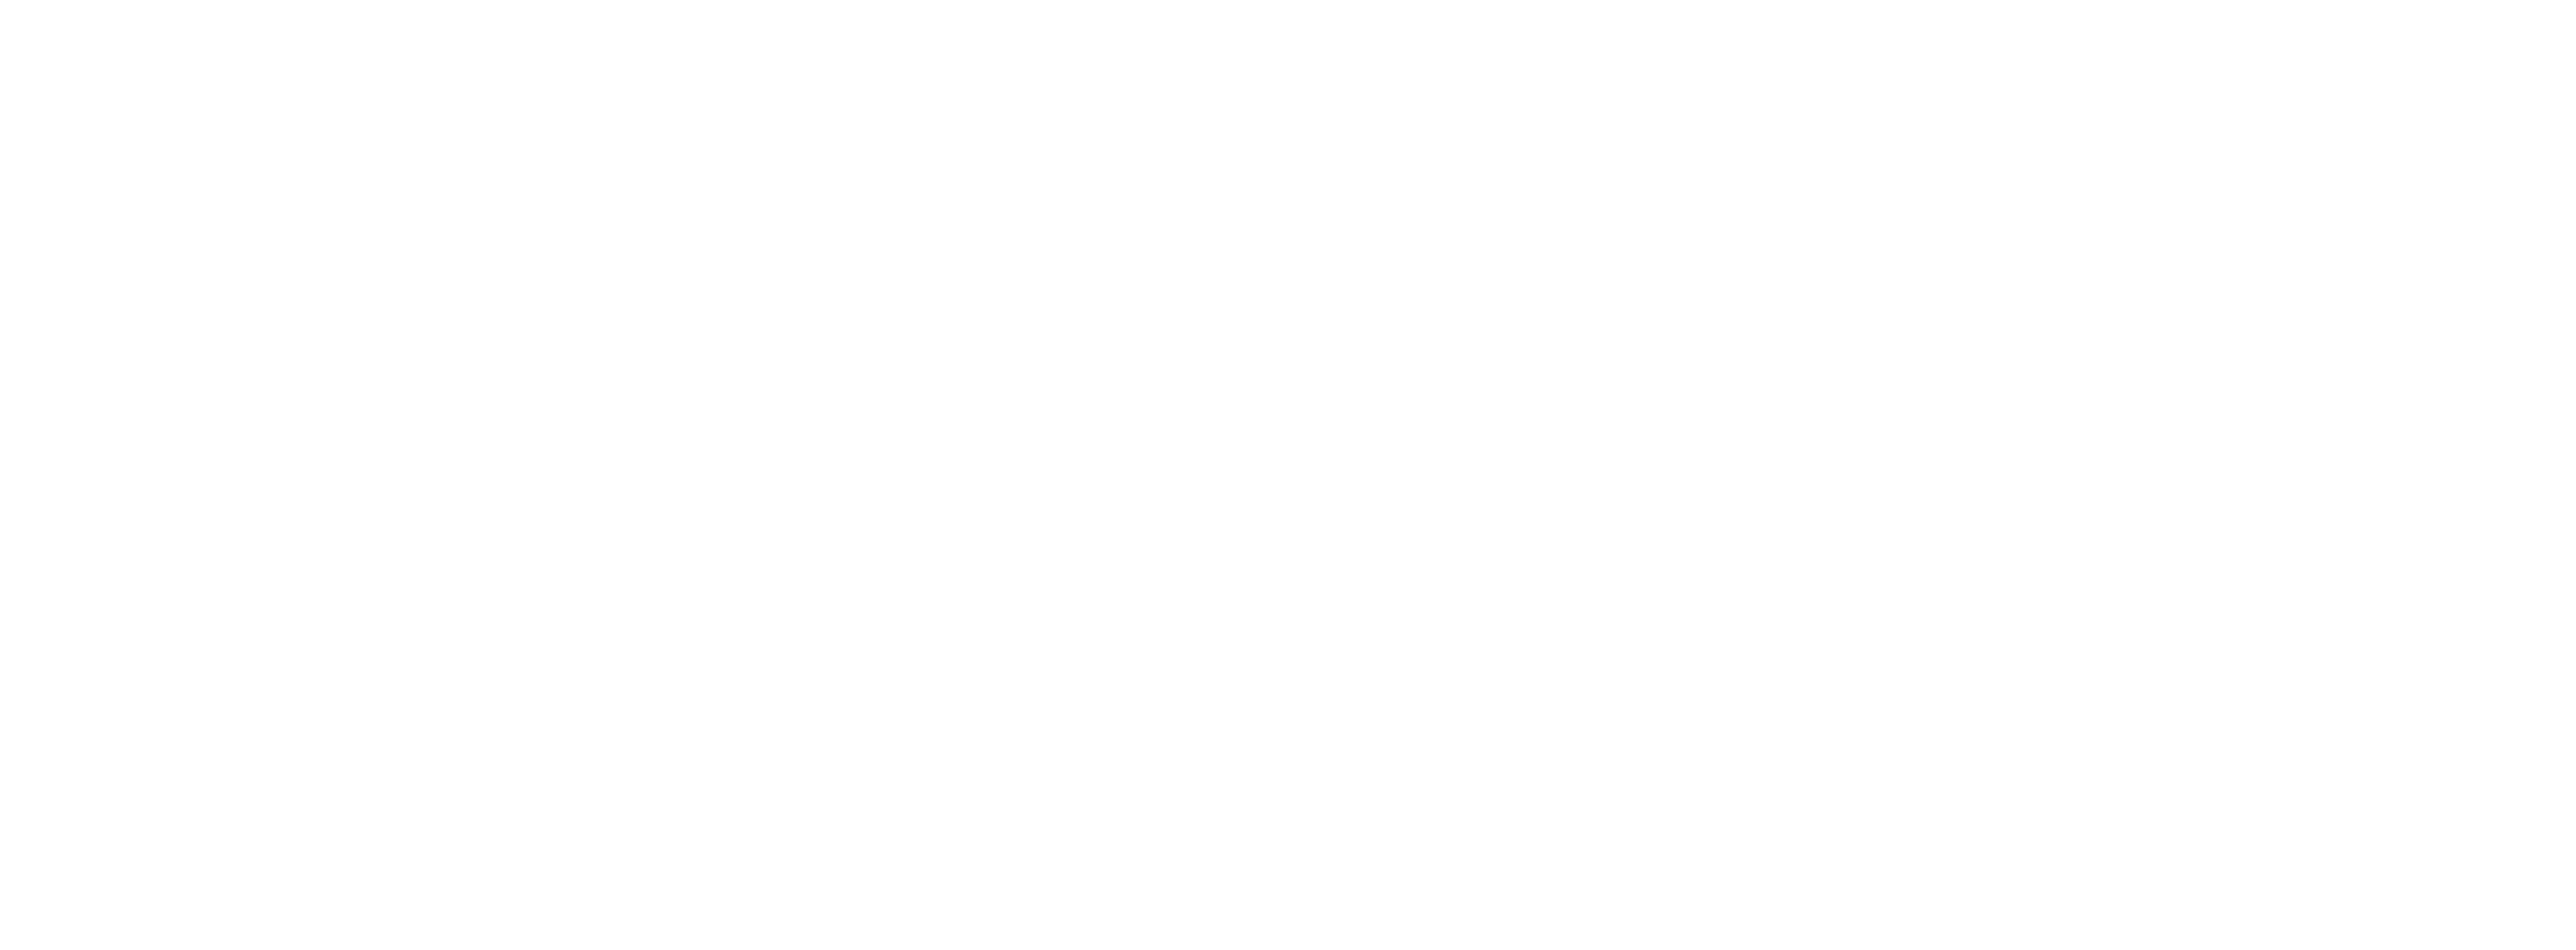 Hydrotech - Logo